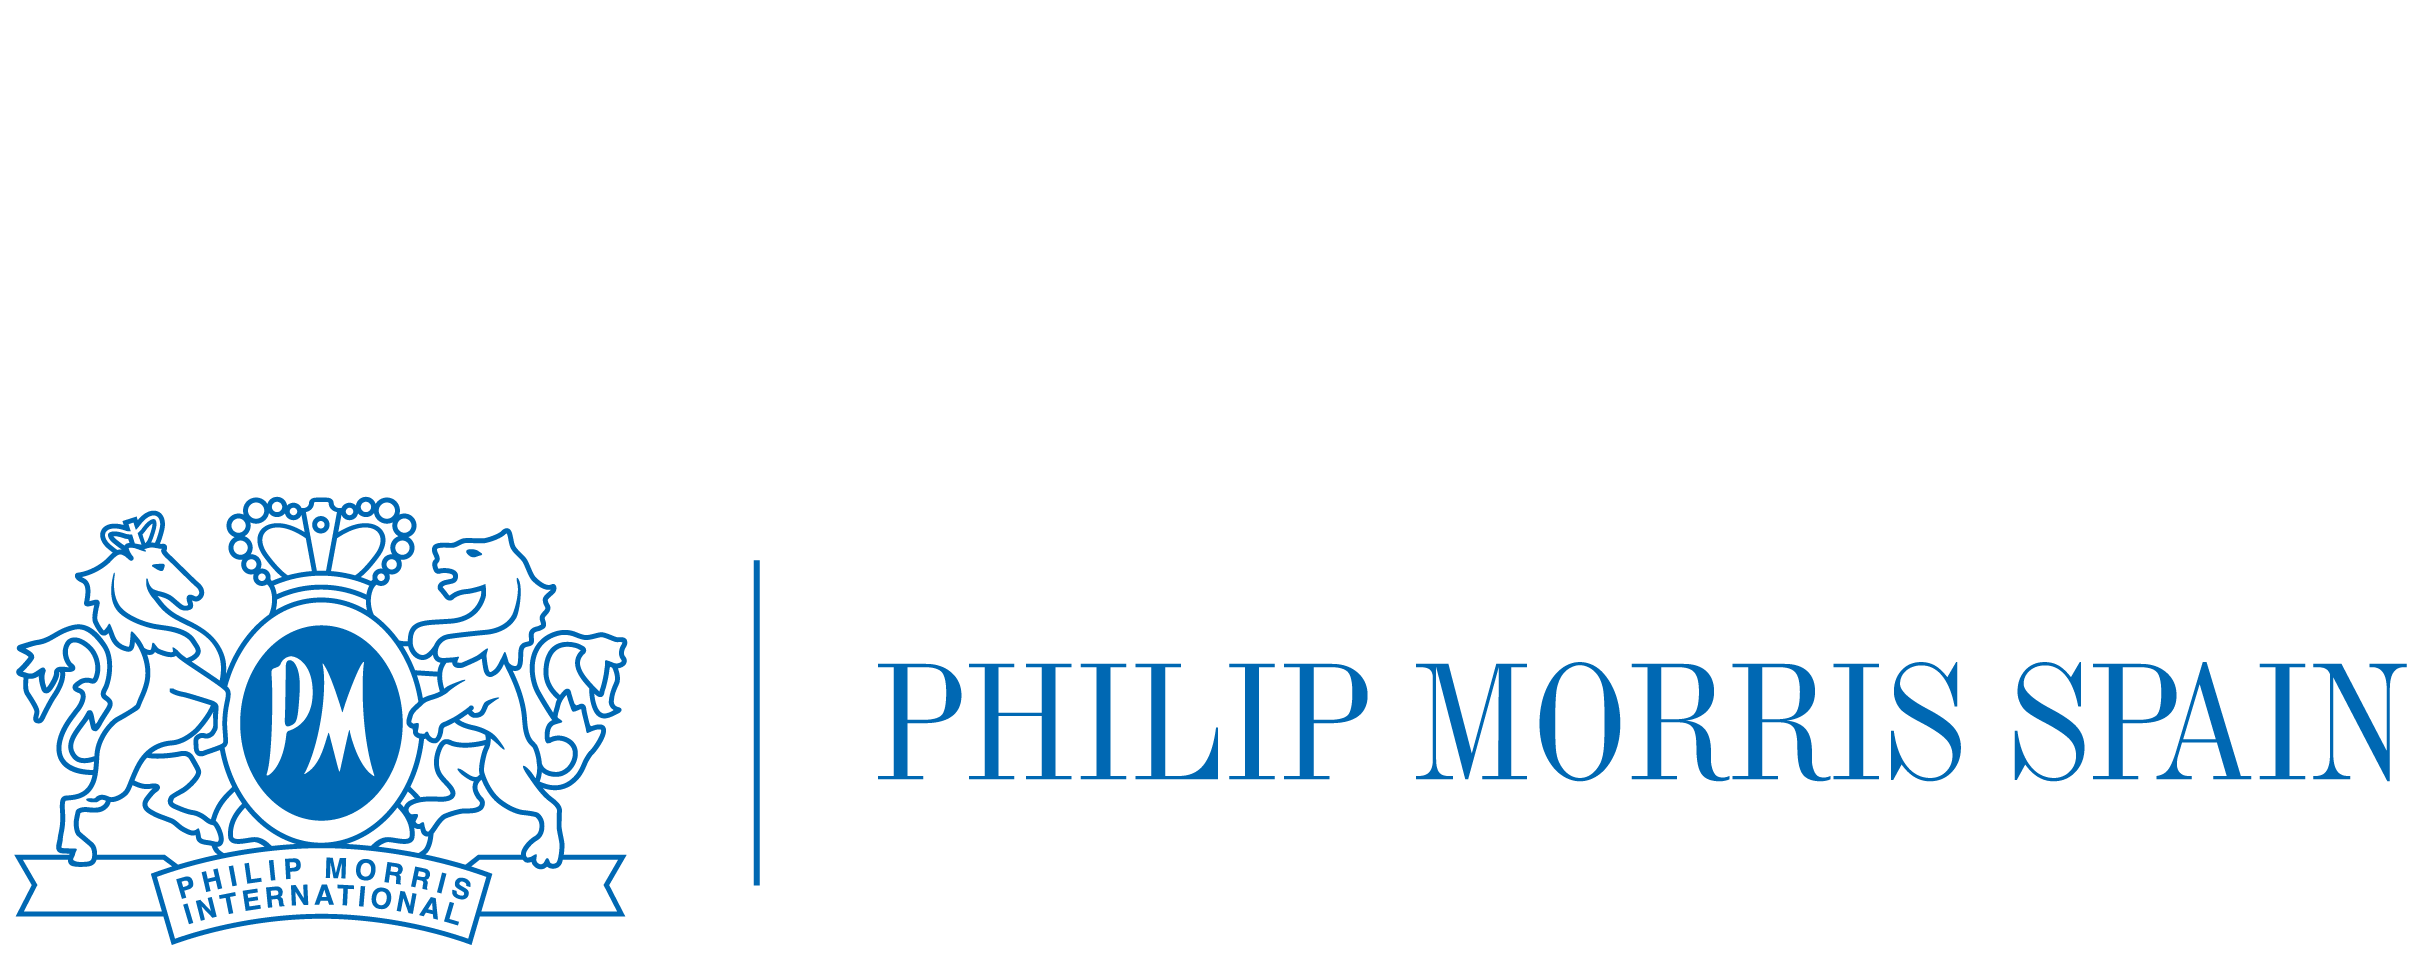 PHILIP MORRIS 